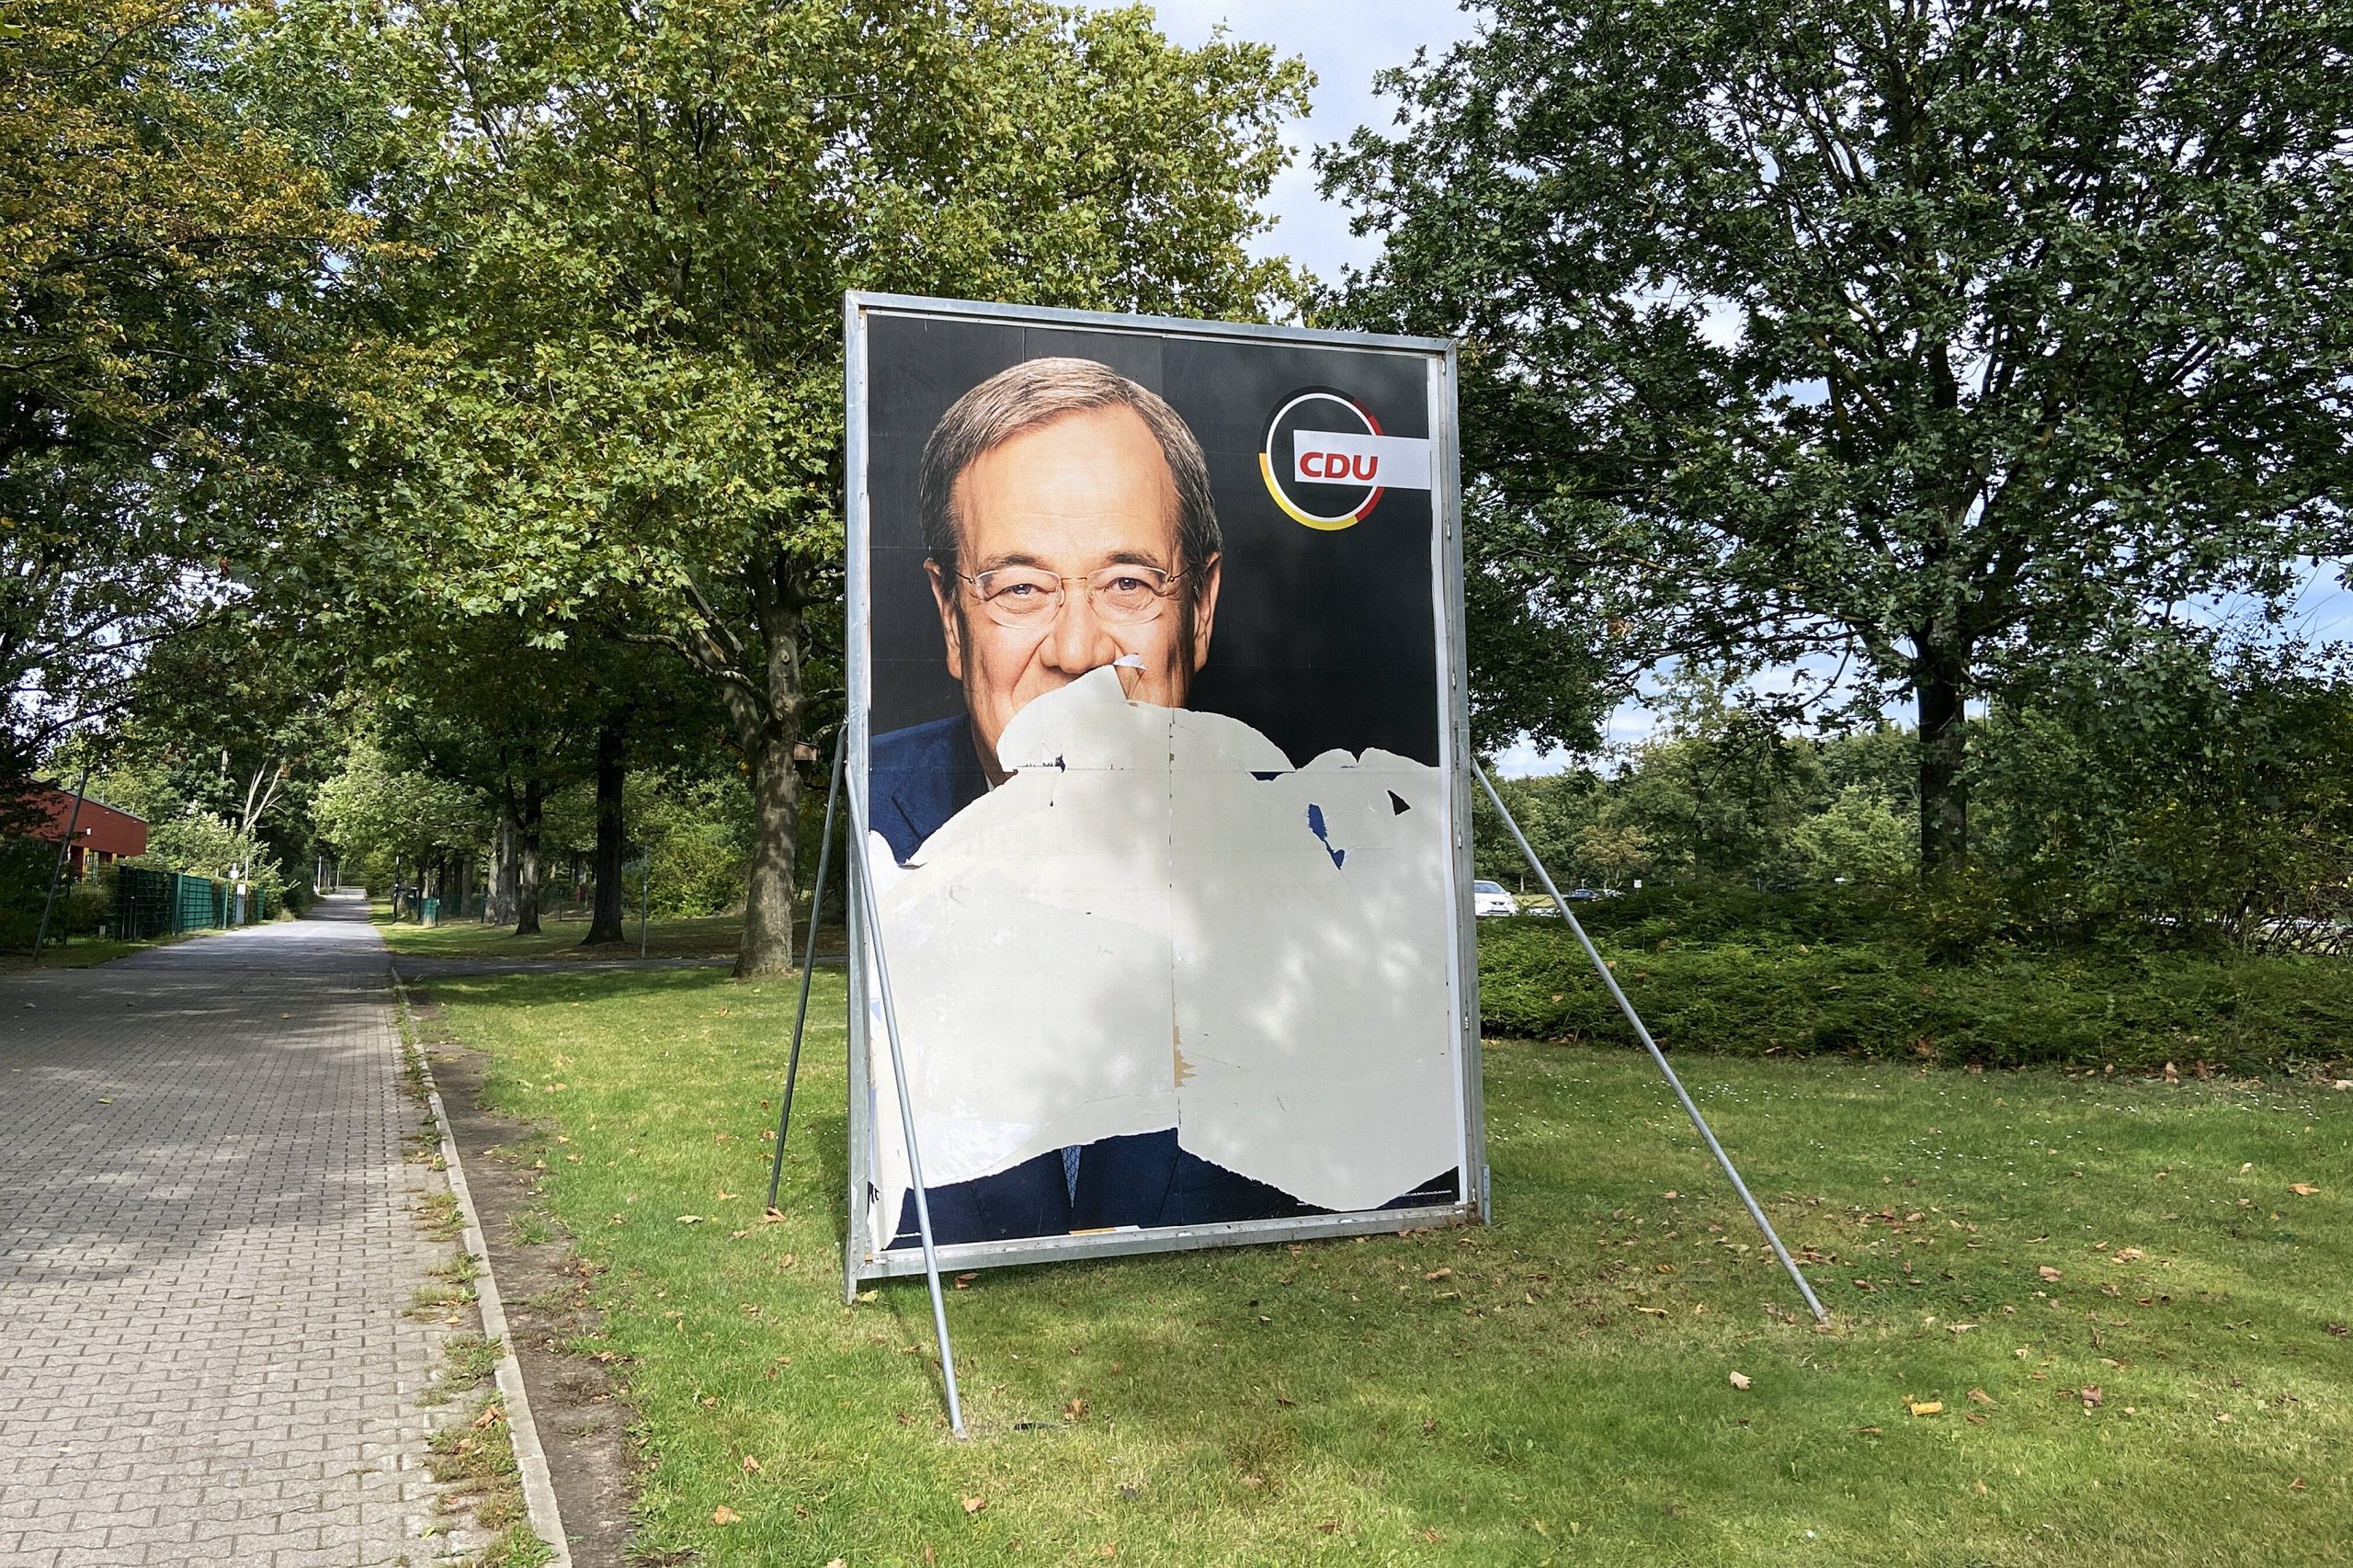 Symbolträchtiges Bild: ein ramponiertes Wahlplakat von Armin Laschet.